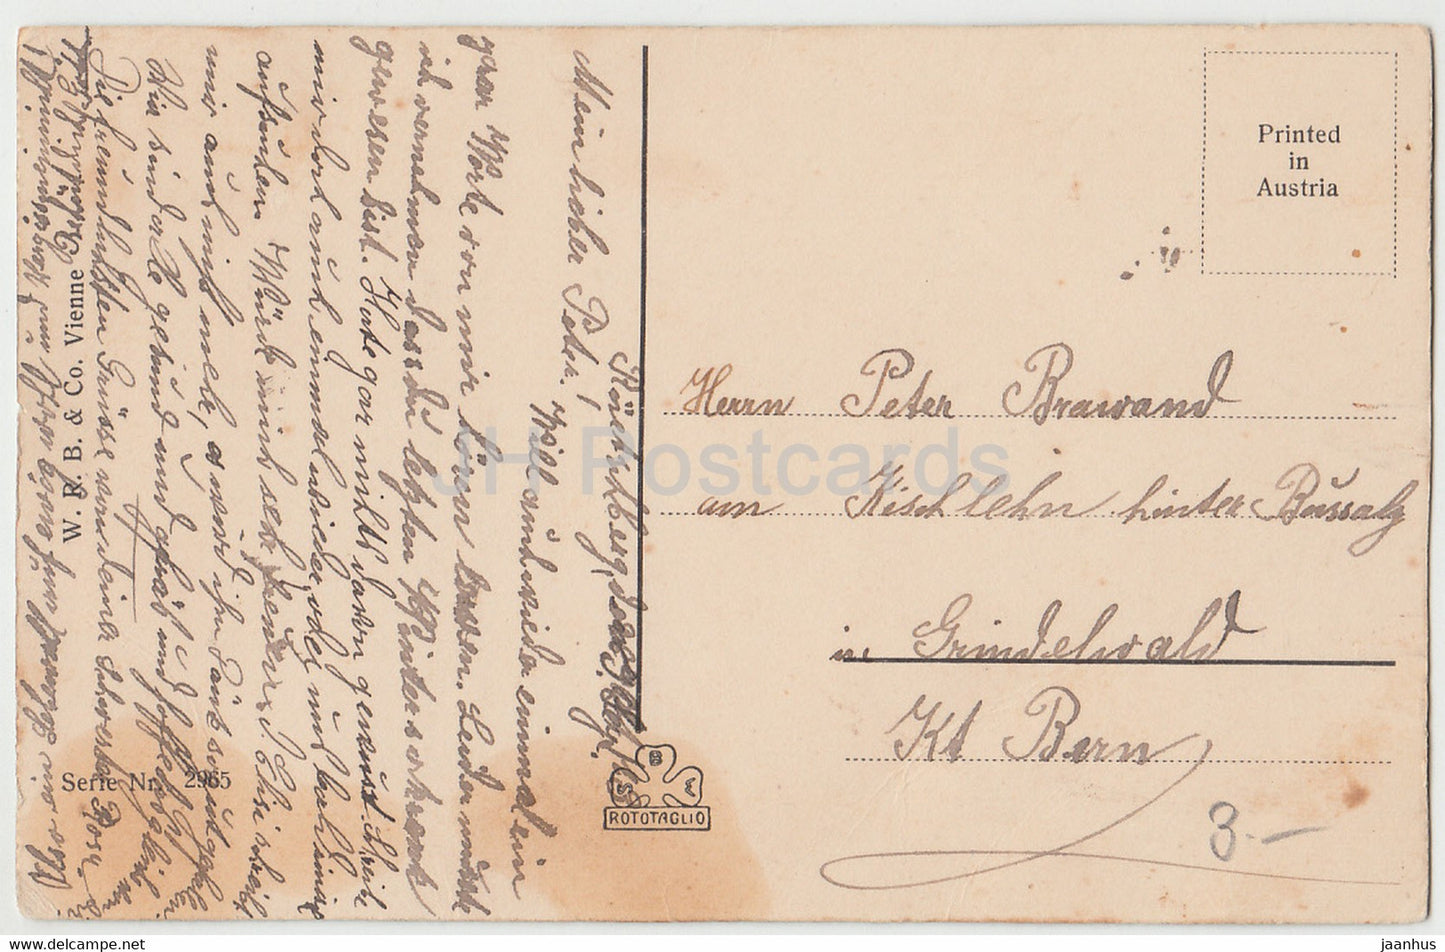 Frau - Brief schreiben - Serie Nr. 2965 - alte Postkarte - Österreich - gebraucht